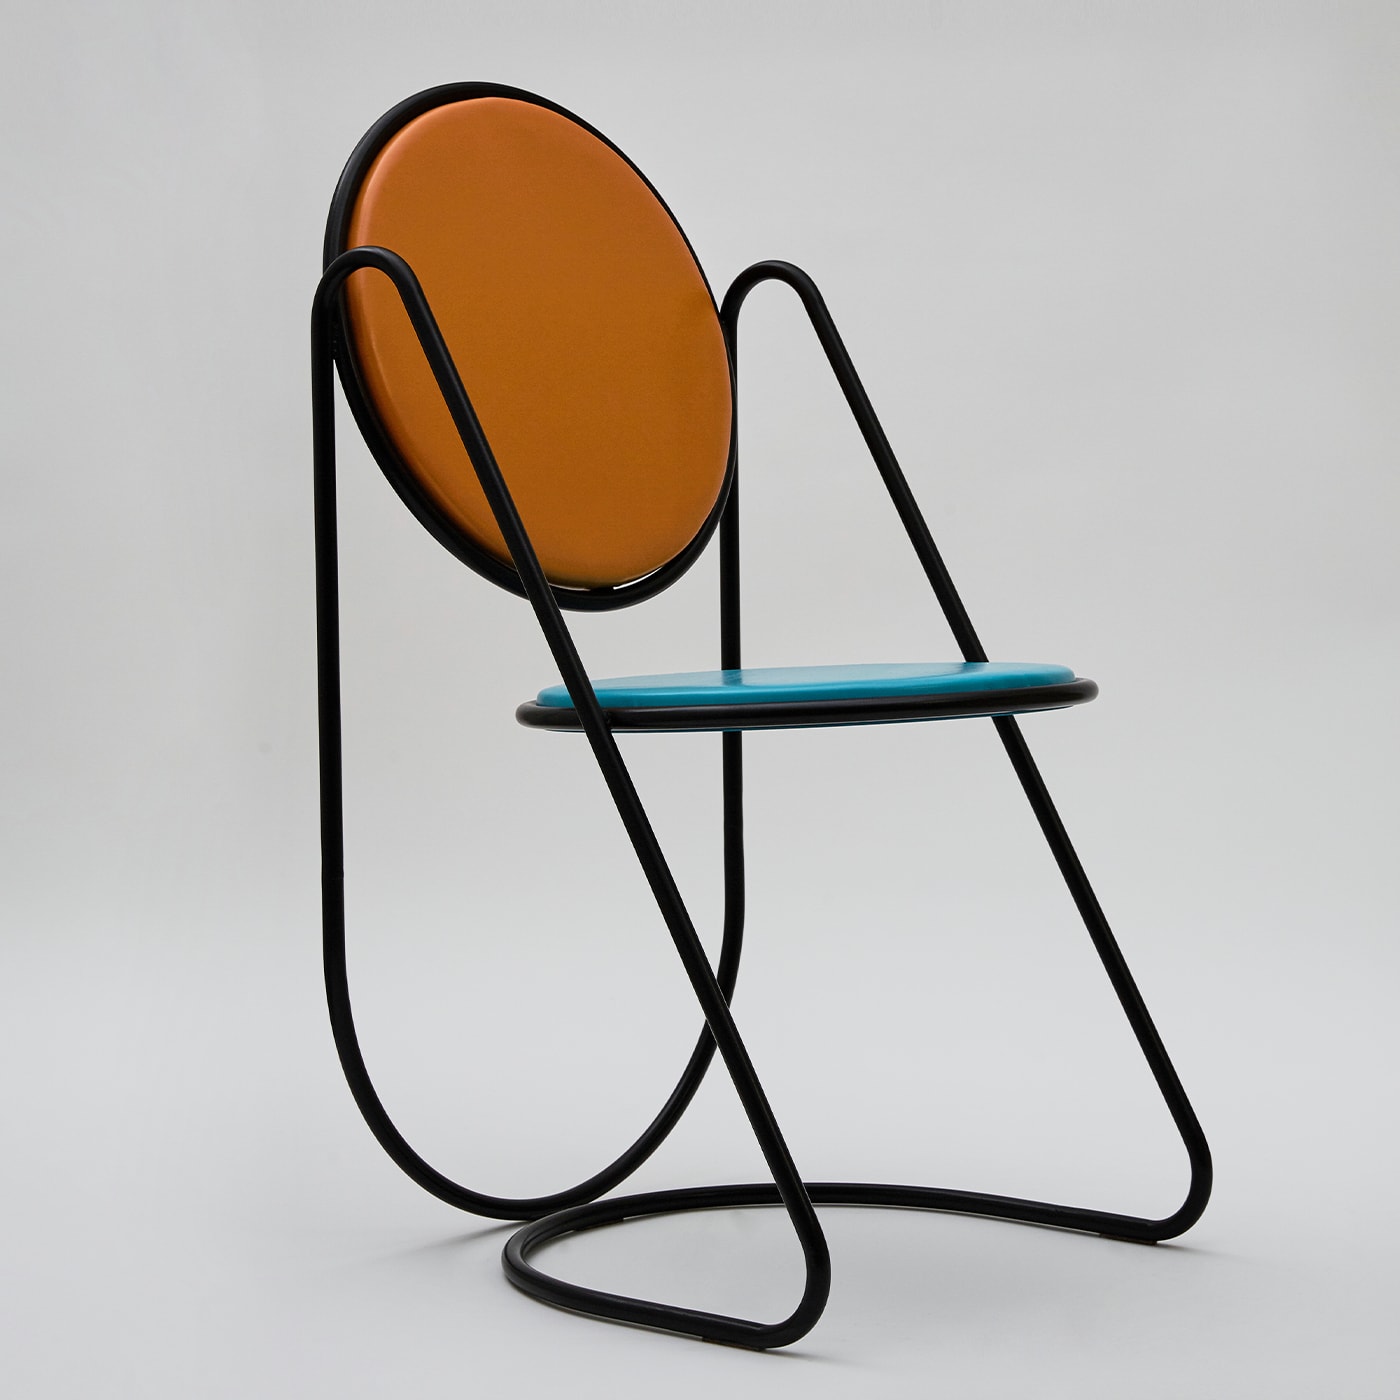 U-Disk Black/Light-Blue/Orange Chair - Le Dictateur